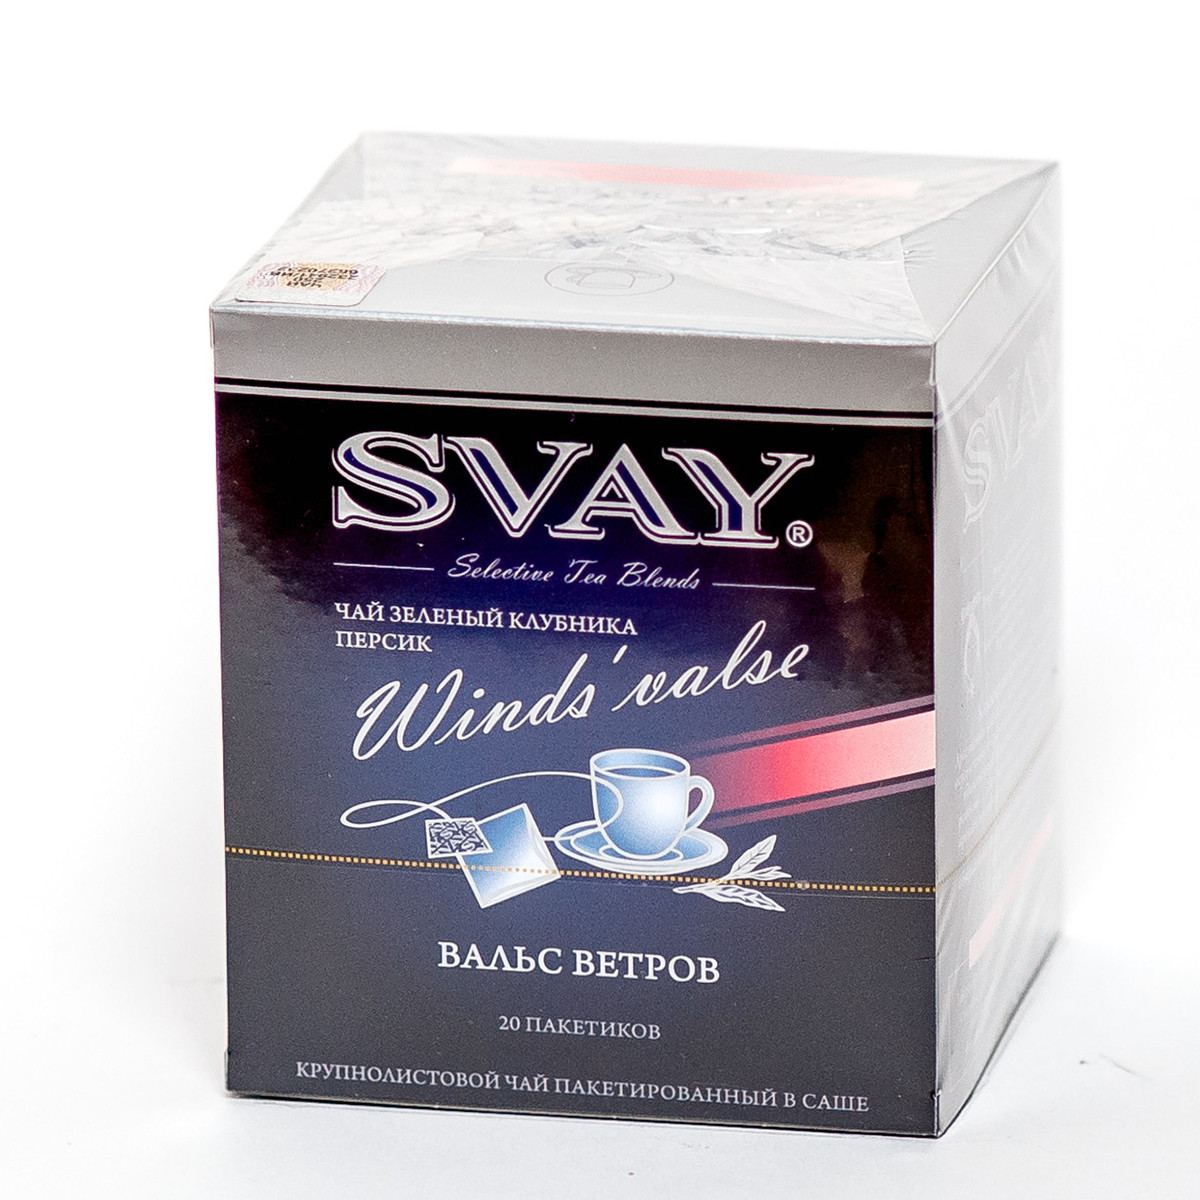 Чай "Svay Winds`Valse", ТМ "SVAY" чай зеленый,клубника, персик (пакетированный саше 20х2 гр)